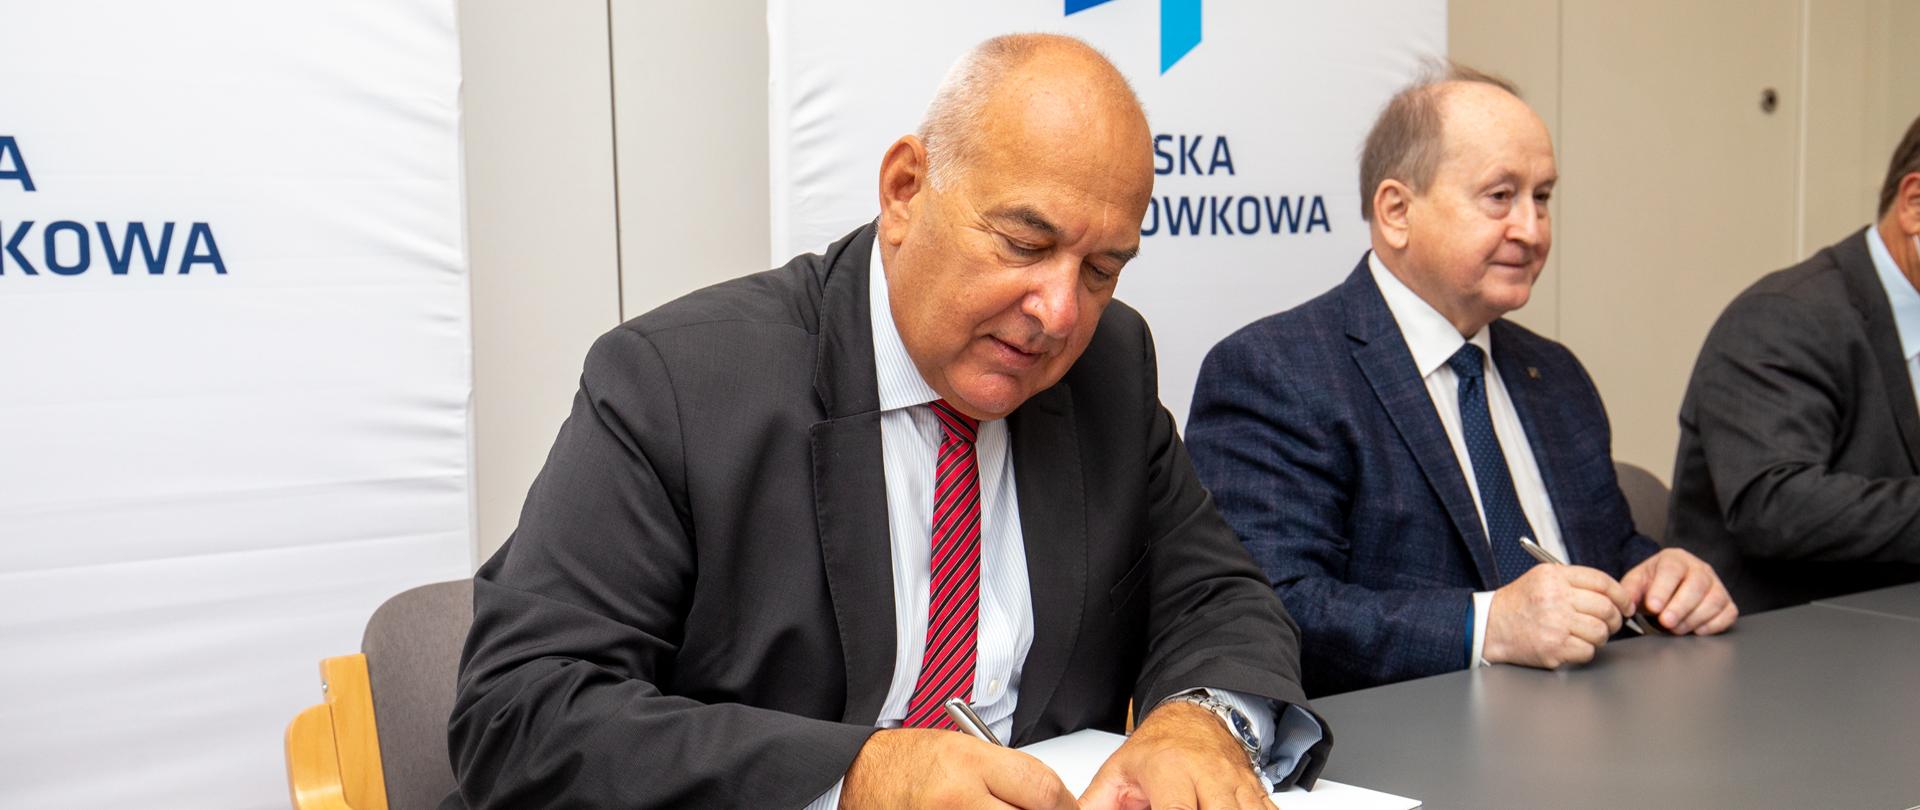 Płatności bezgotówkowe przyszłością gospodarki -Minister finansów Tadeusz Kościński podpisuje porozumienie